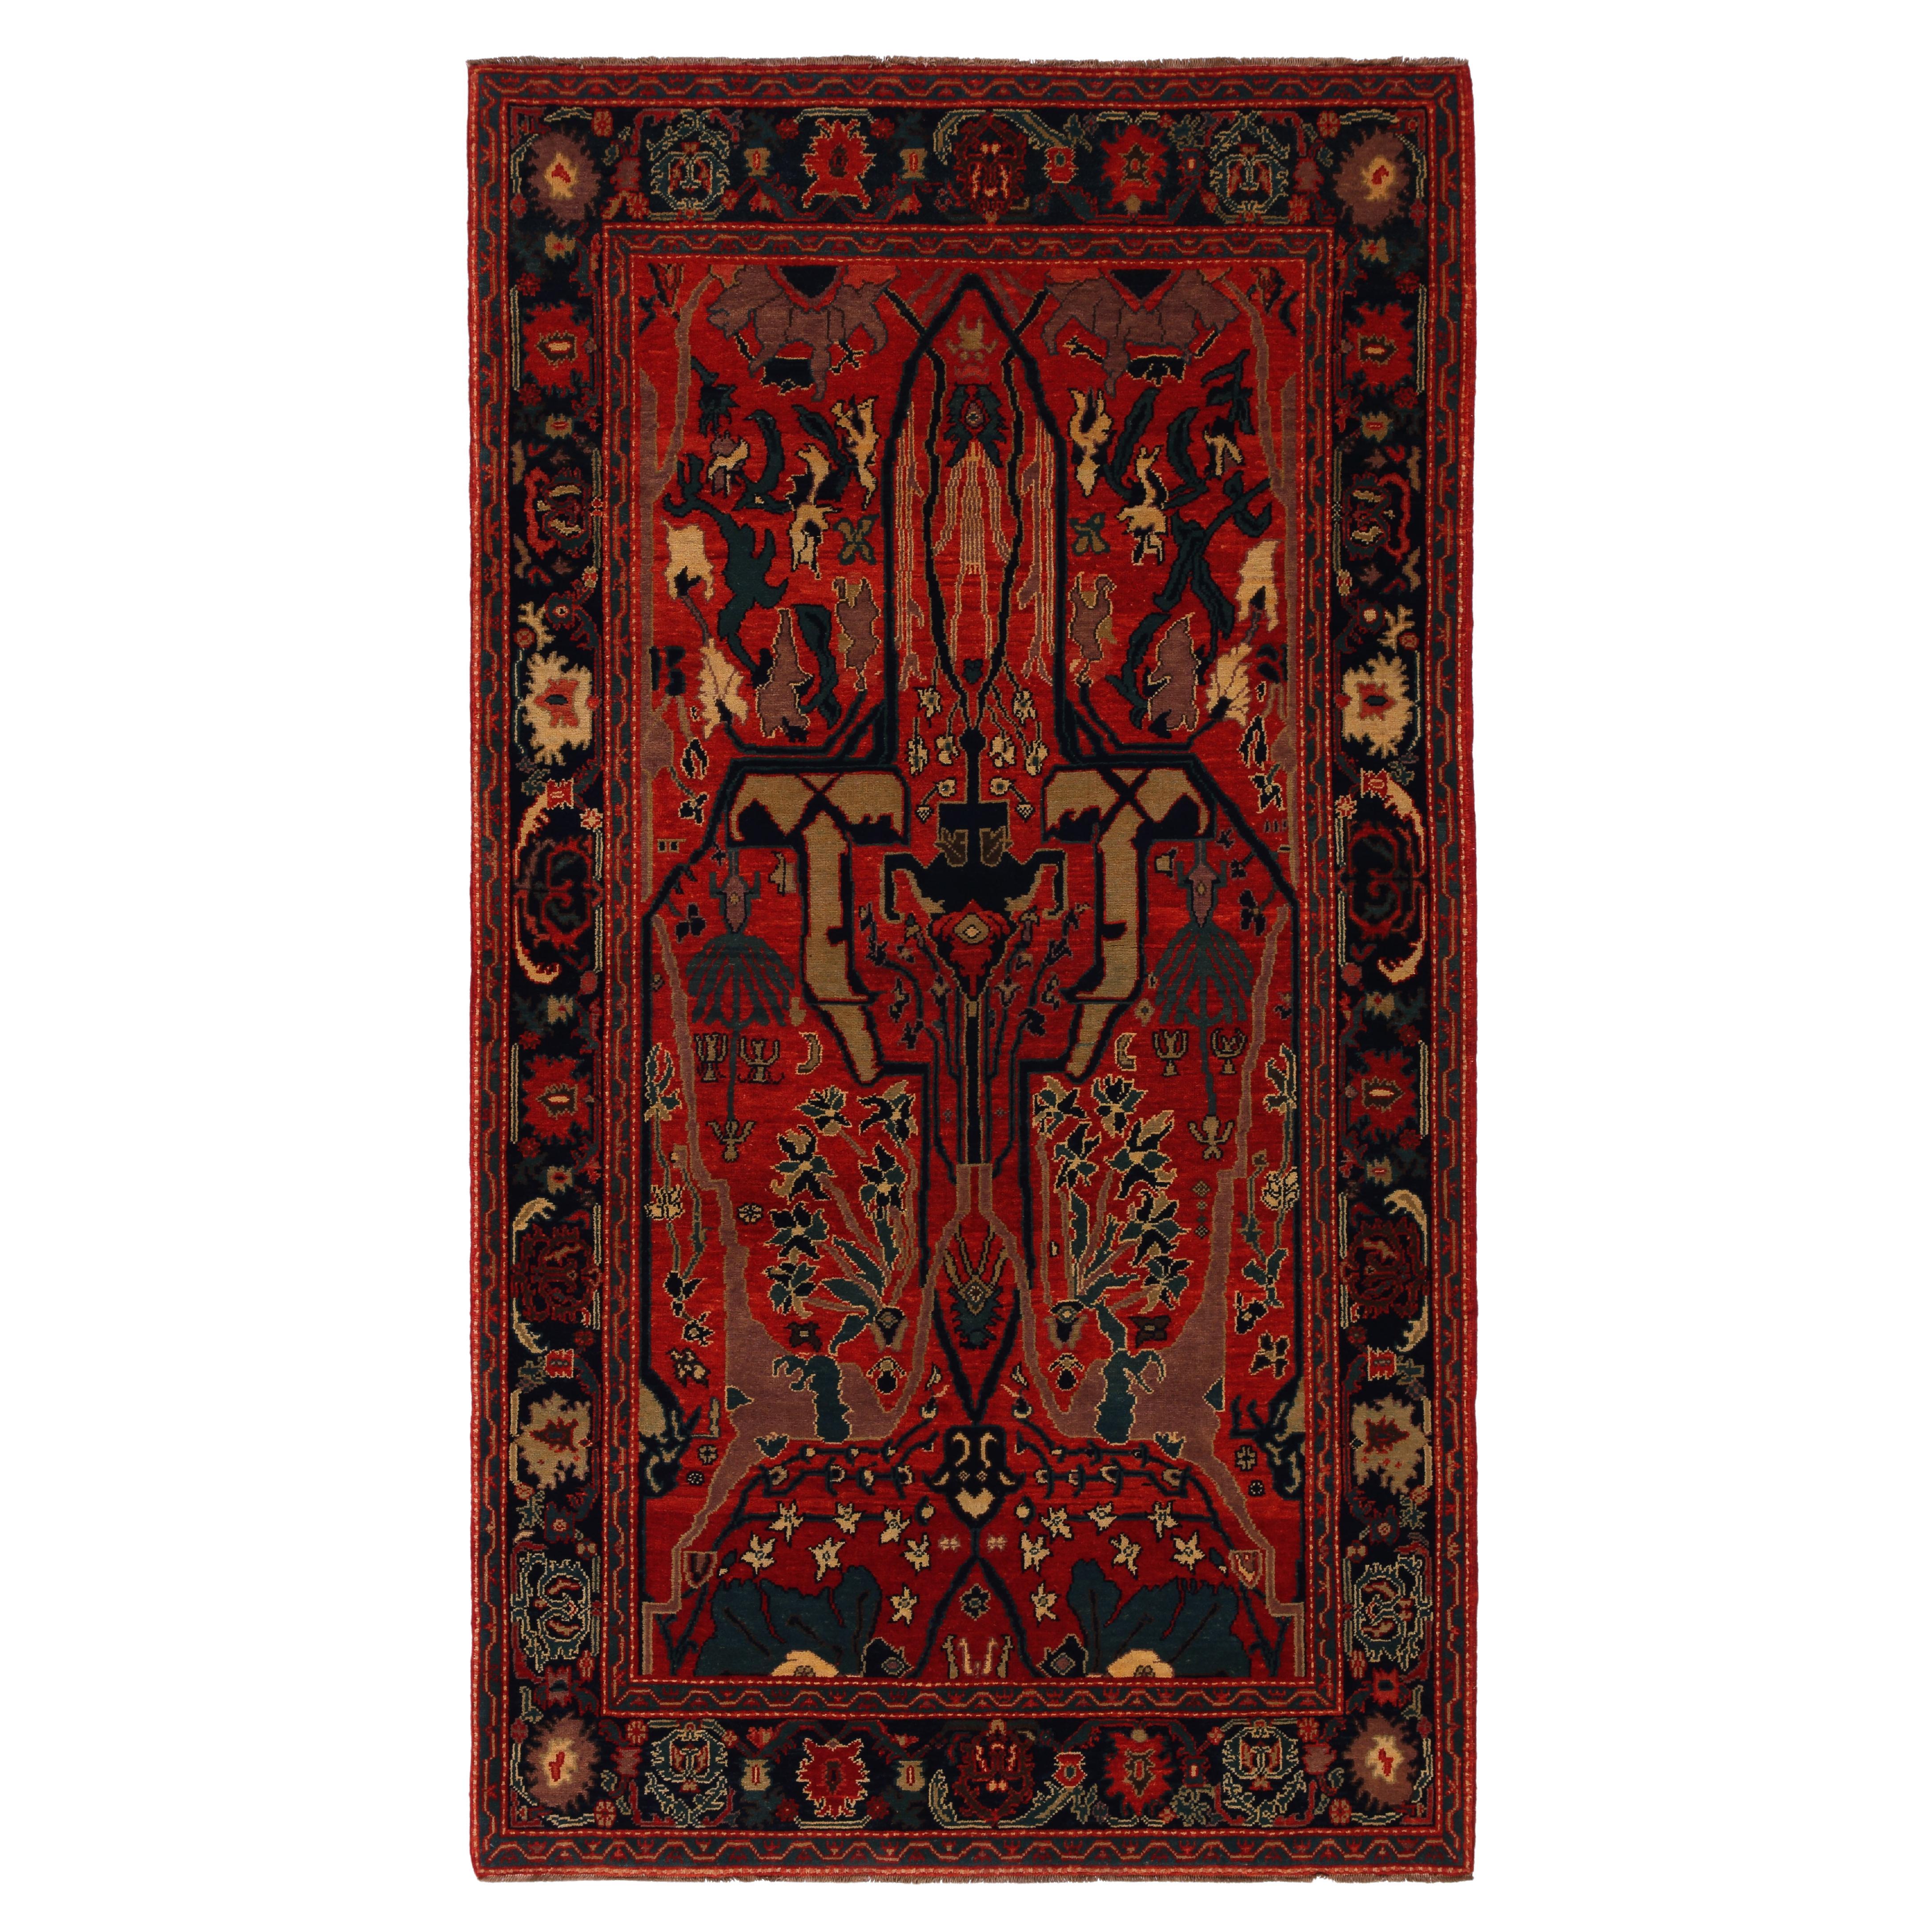 Ararat Teppich Gerous Arabesque Teppich, 19. Jahrhundert Persisches Revival Teppich, natürlich gefärbt